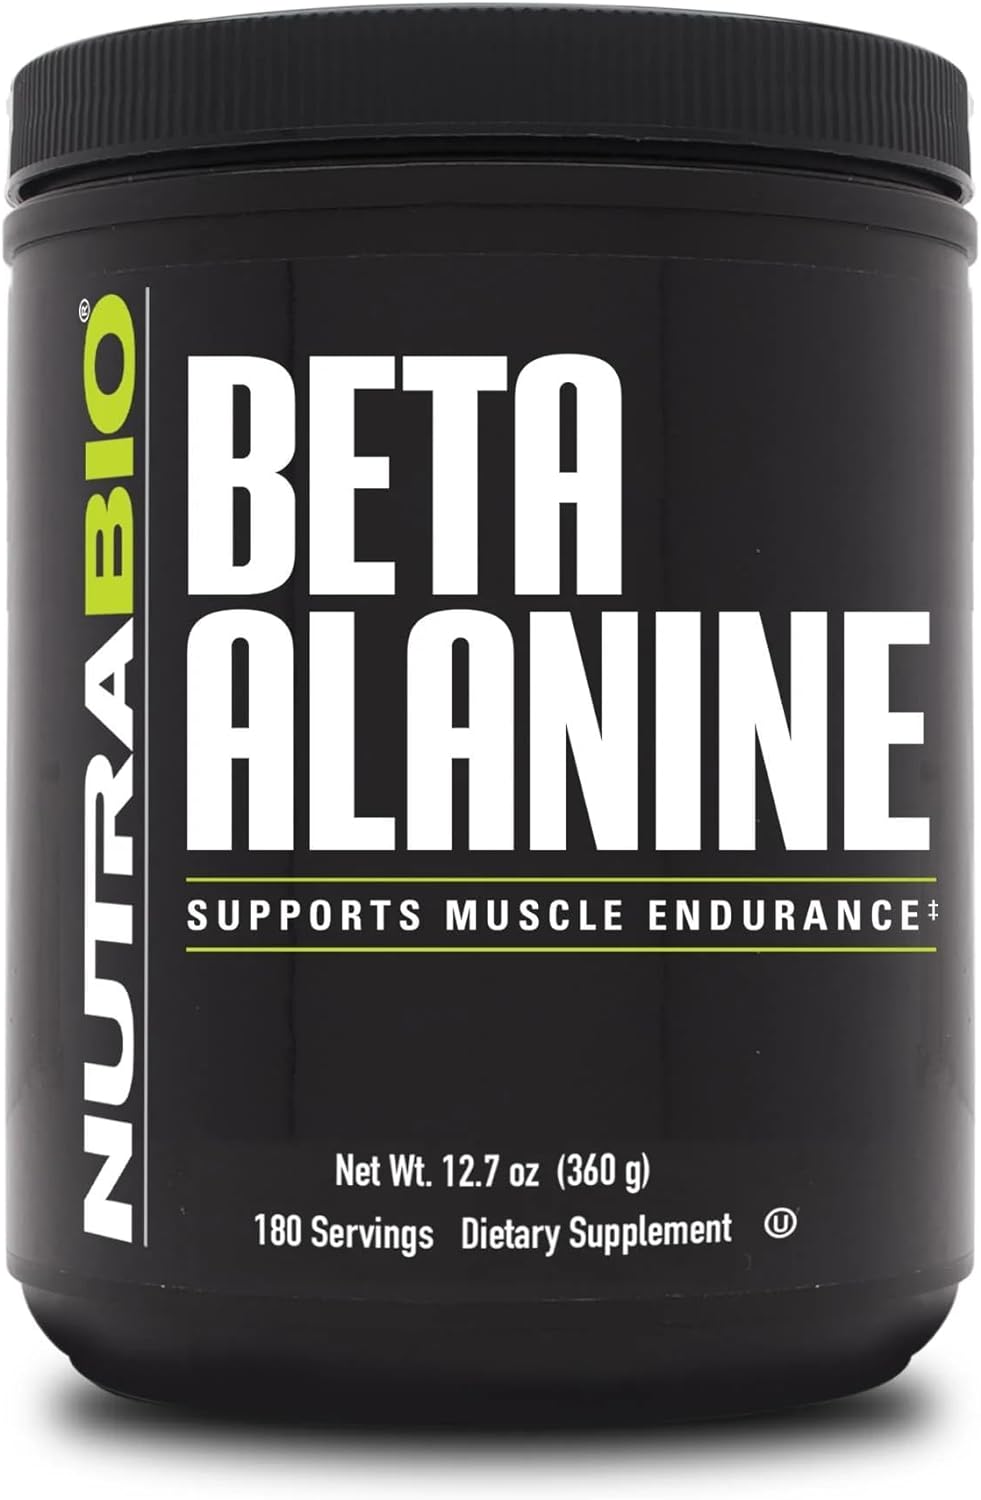 NutraBio Beta Alanine Pre-Workout Supplement - 360g Powder